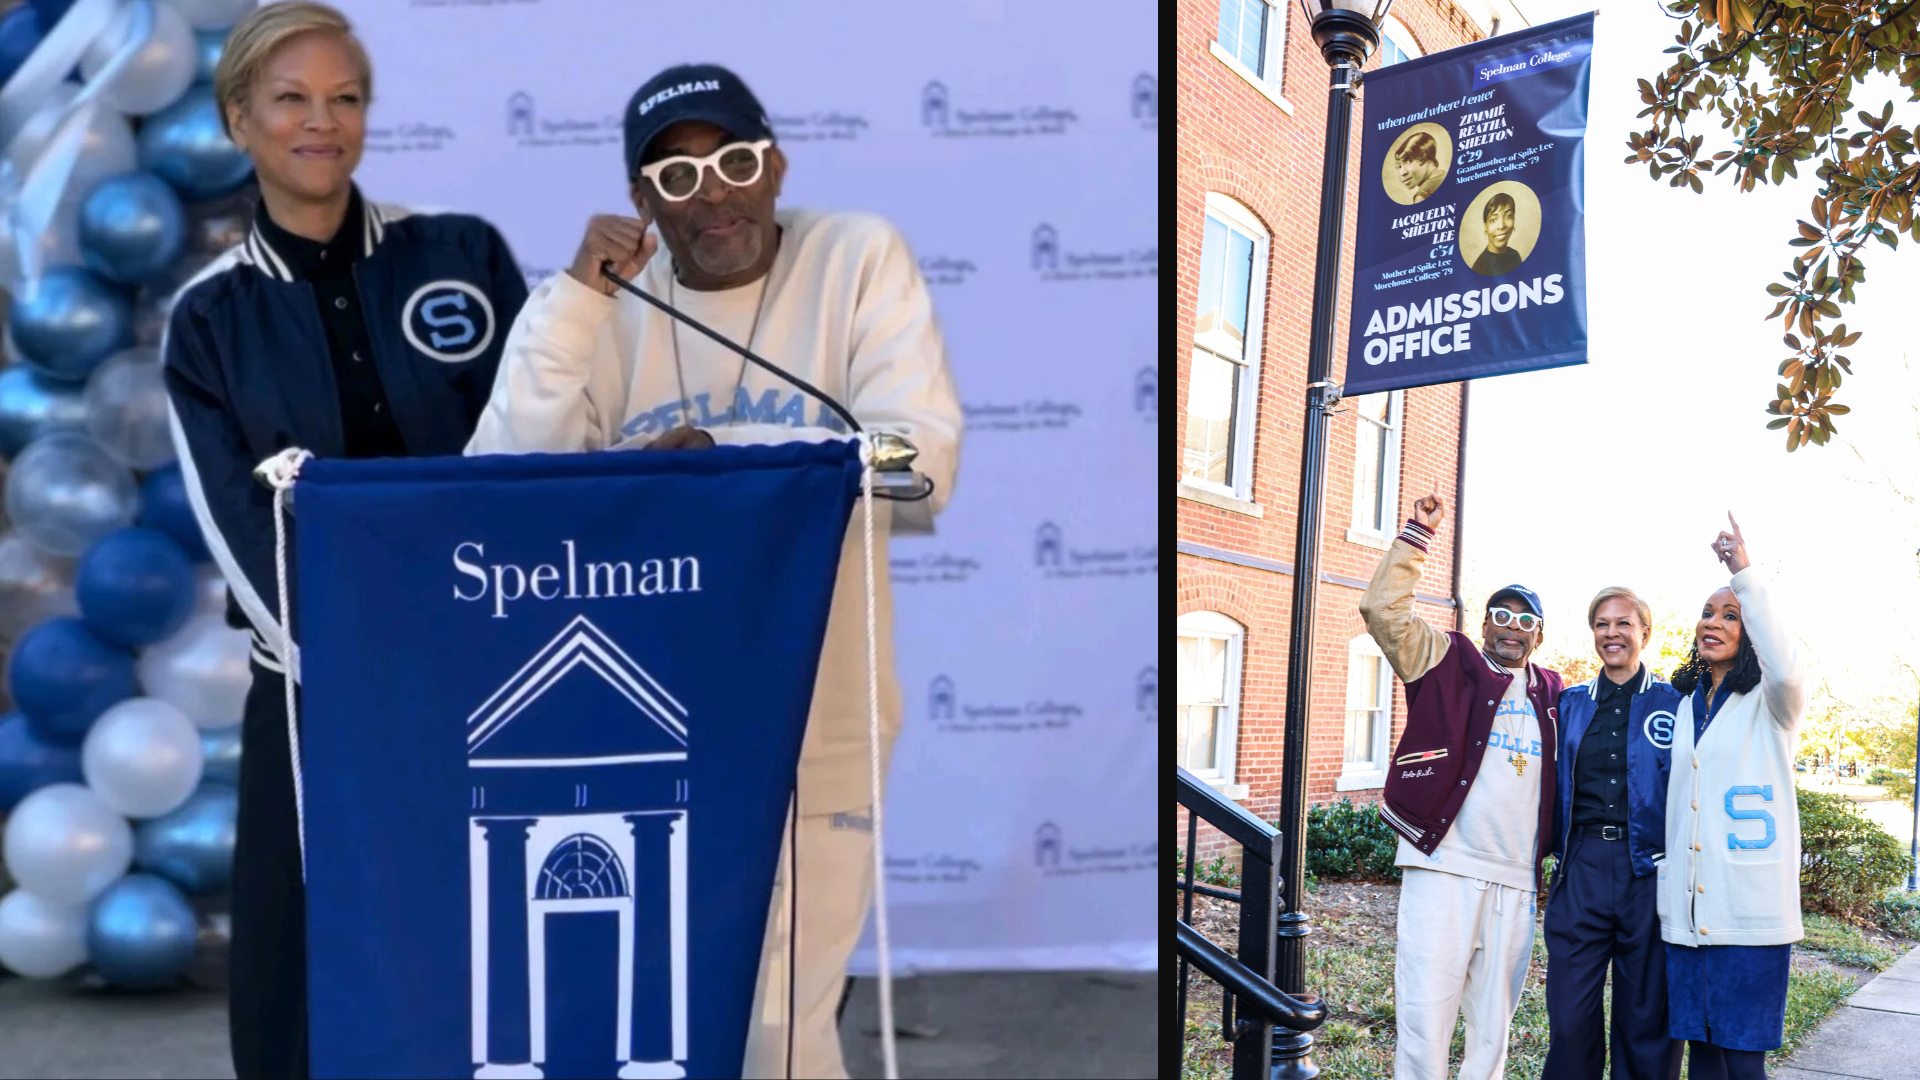 La abuela y la madre de Spike Lee han dedicado el edificio Spelman College | La crónica de Michigan